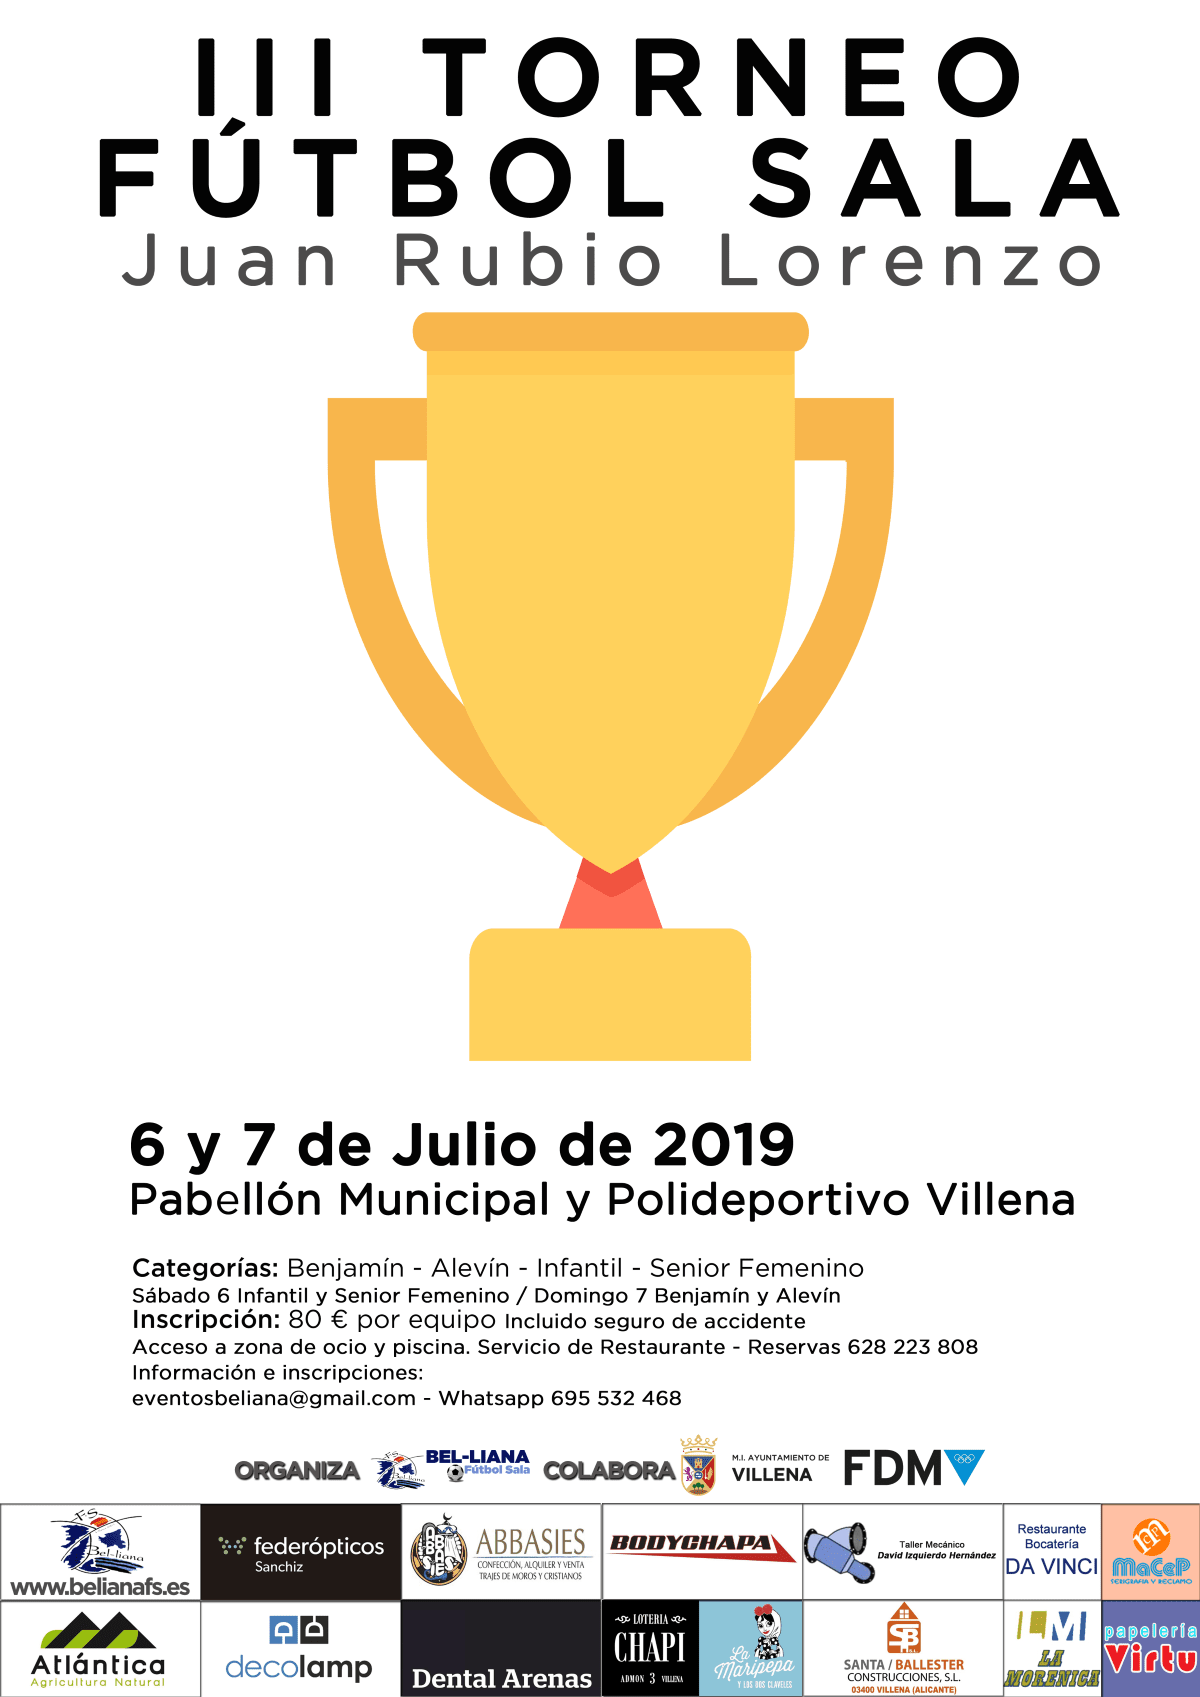 El Bel-liana Fútbol Sala organiza la tercera edición de su torneo Juan Rubio Lorenzo y un campeonato en modalidad 24 horas junto al Villena Fútbol Sala